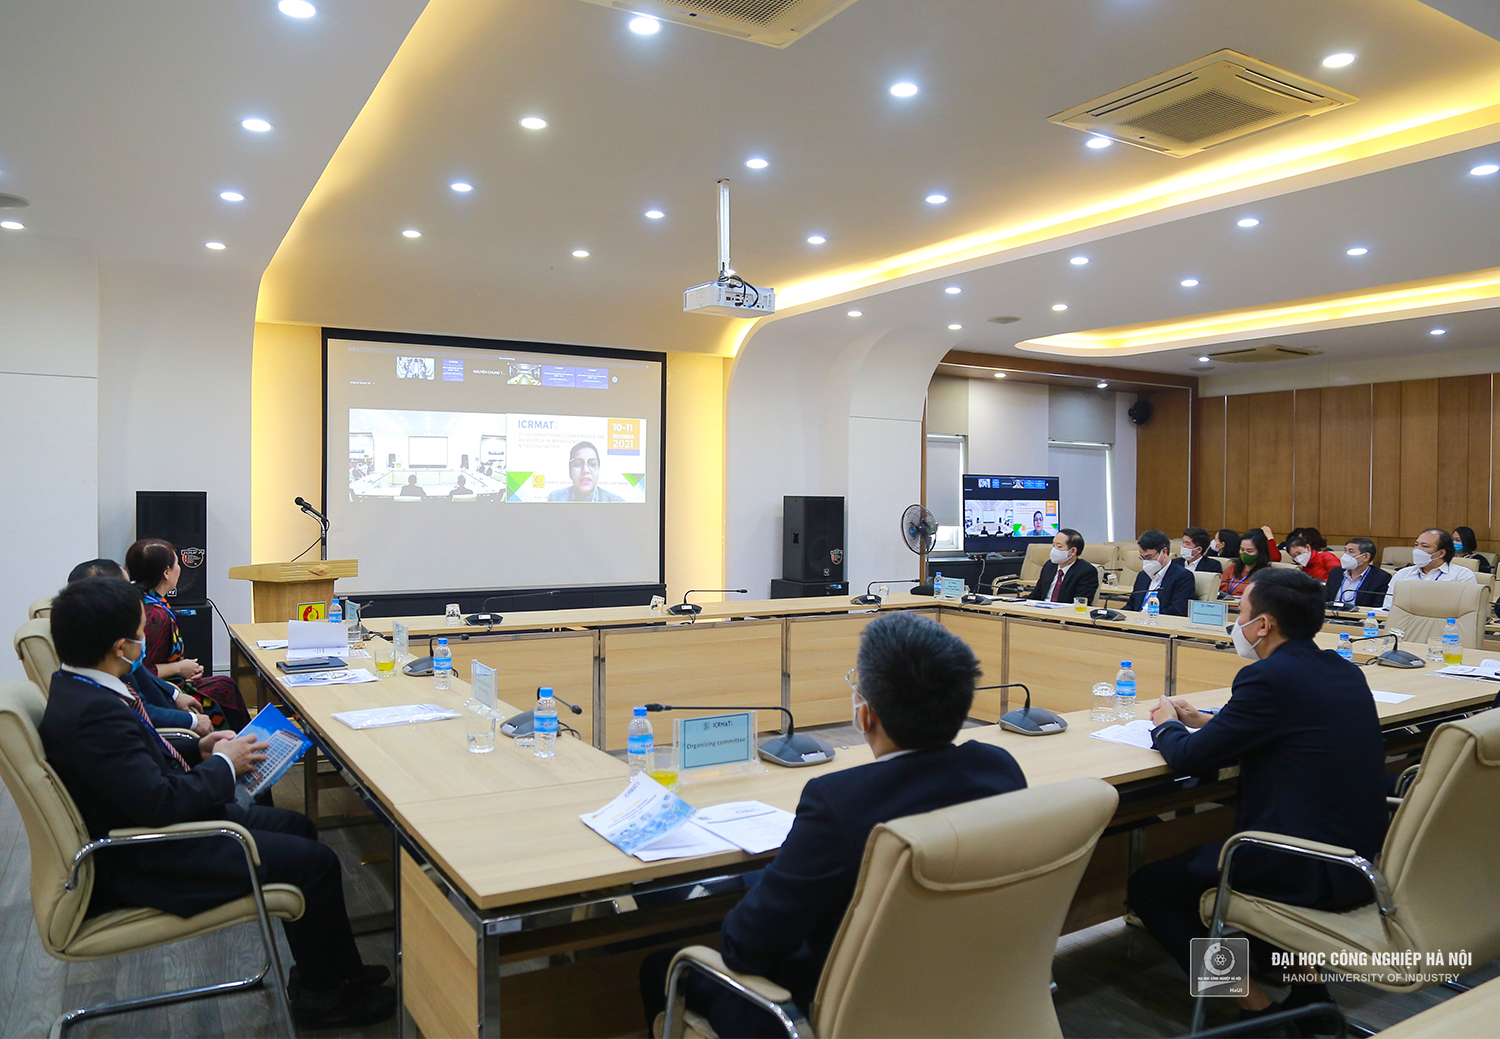 Hội thảo khoa học quốc tế Nghiên cứu về Quản lý và Đổi mới Công nghệ 2021 tại Đại học Công nghiệp Hà Nội